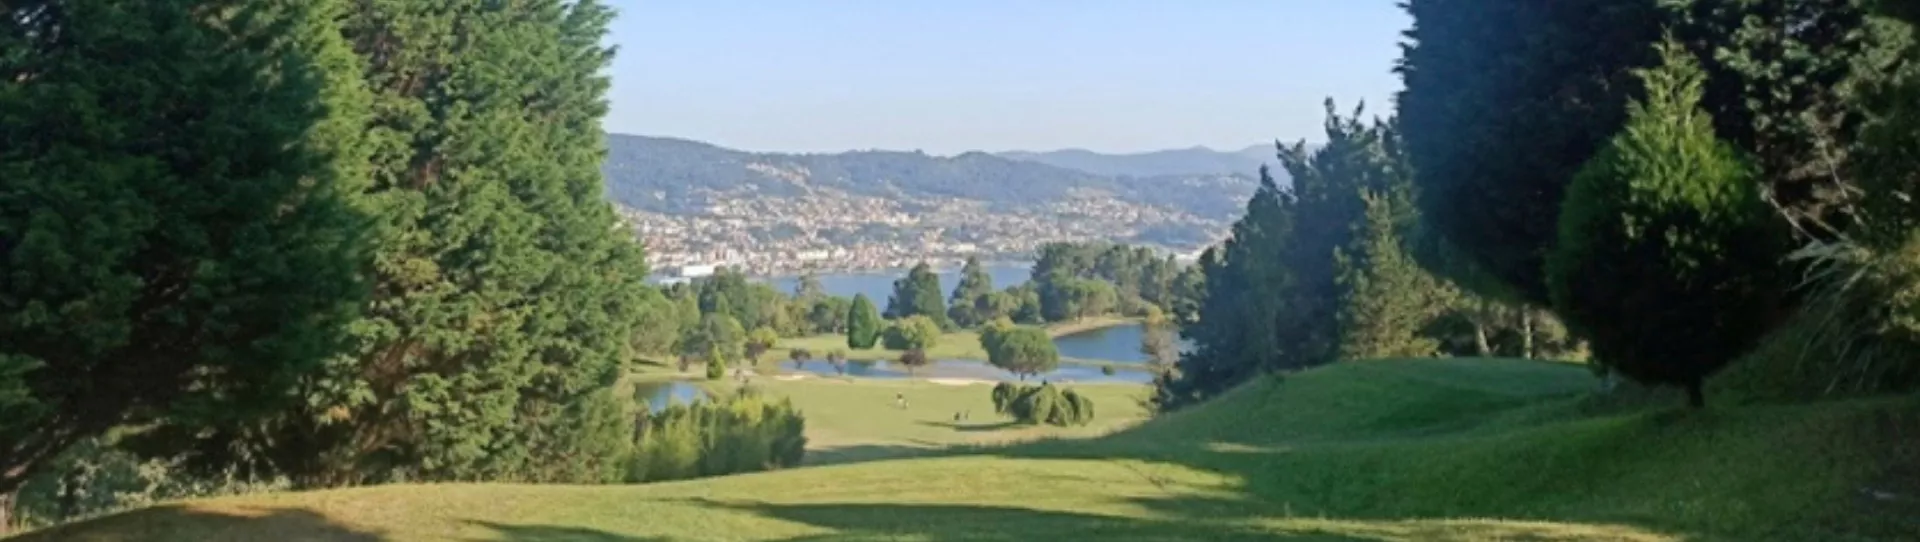 Spain golf courses - Ría de Vigo Golf Course - Photo 1